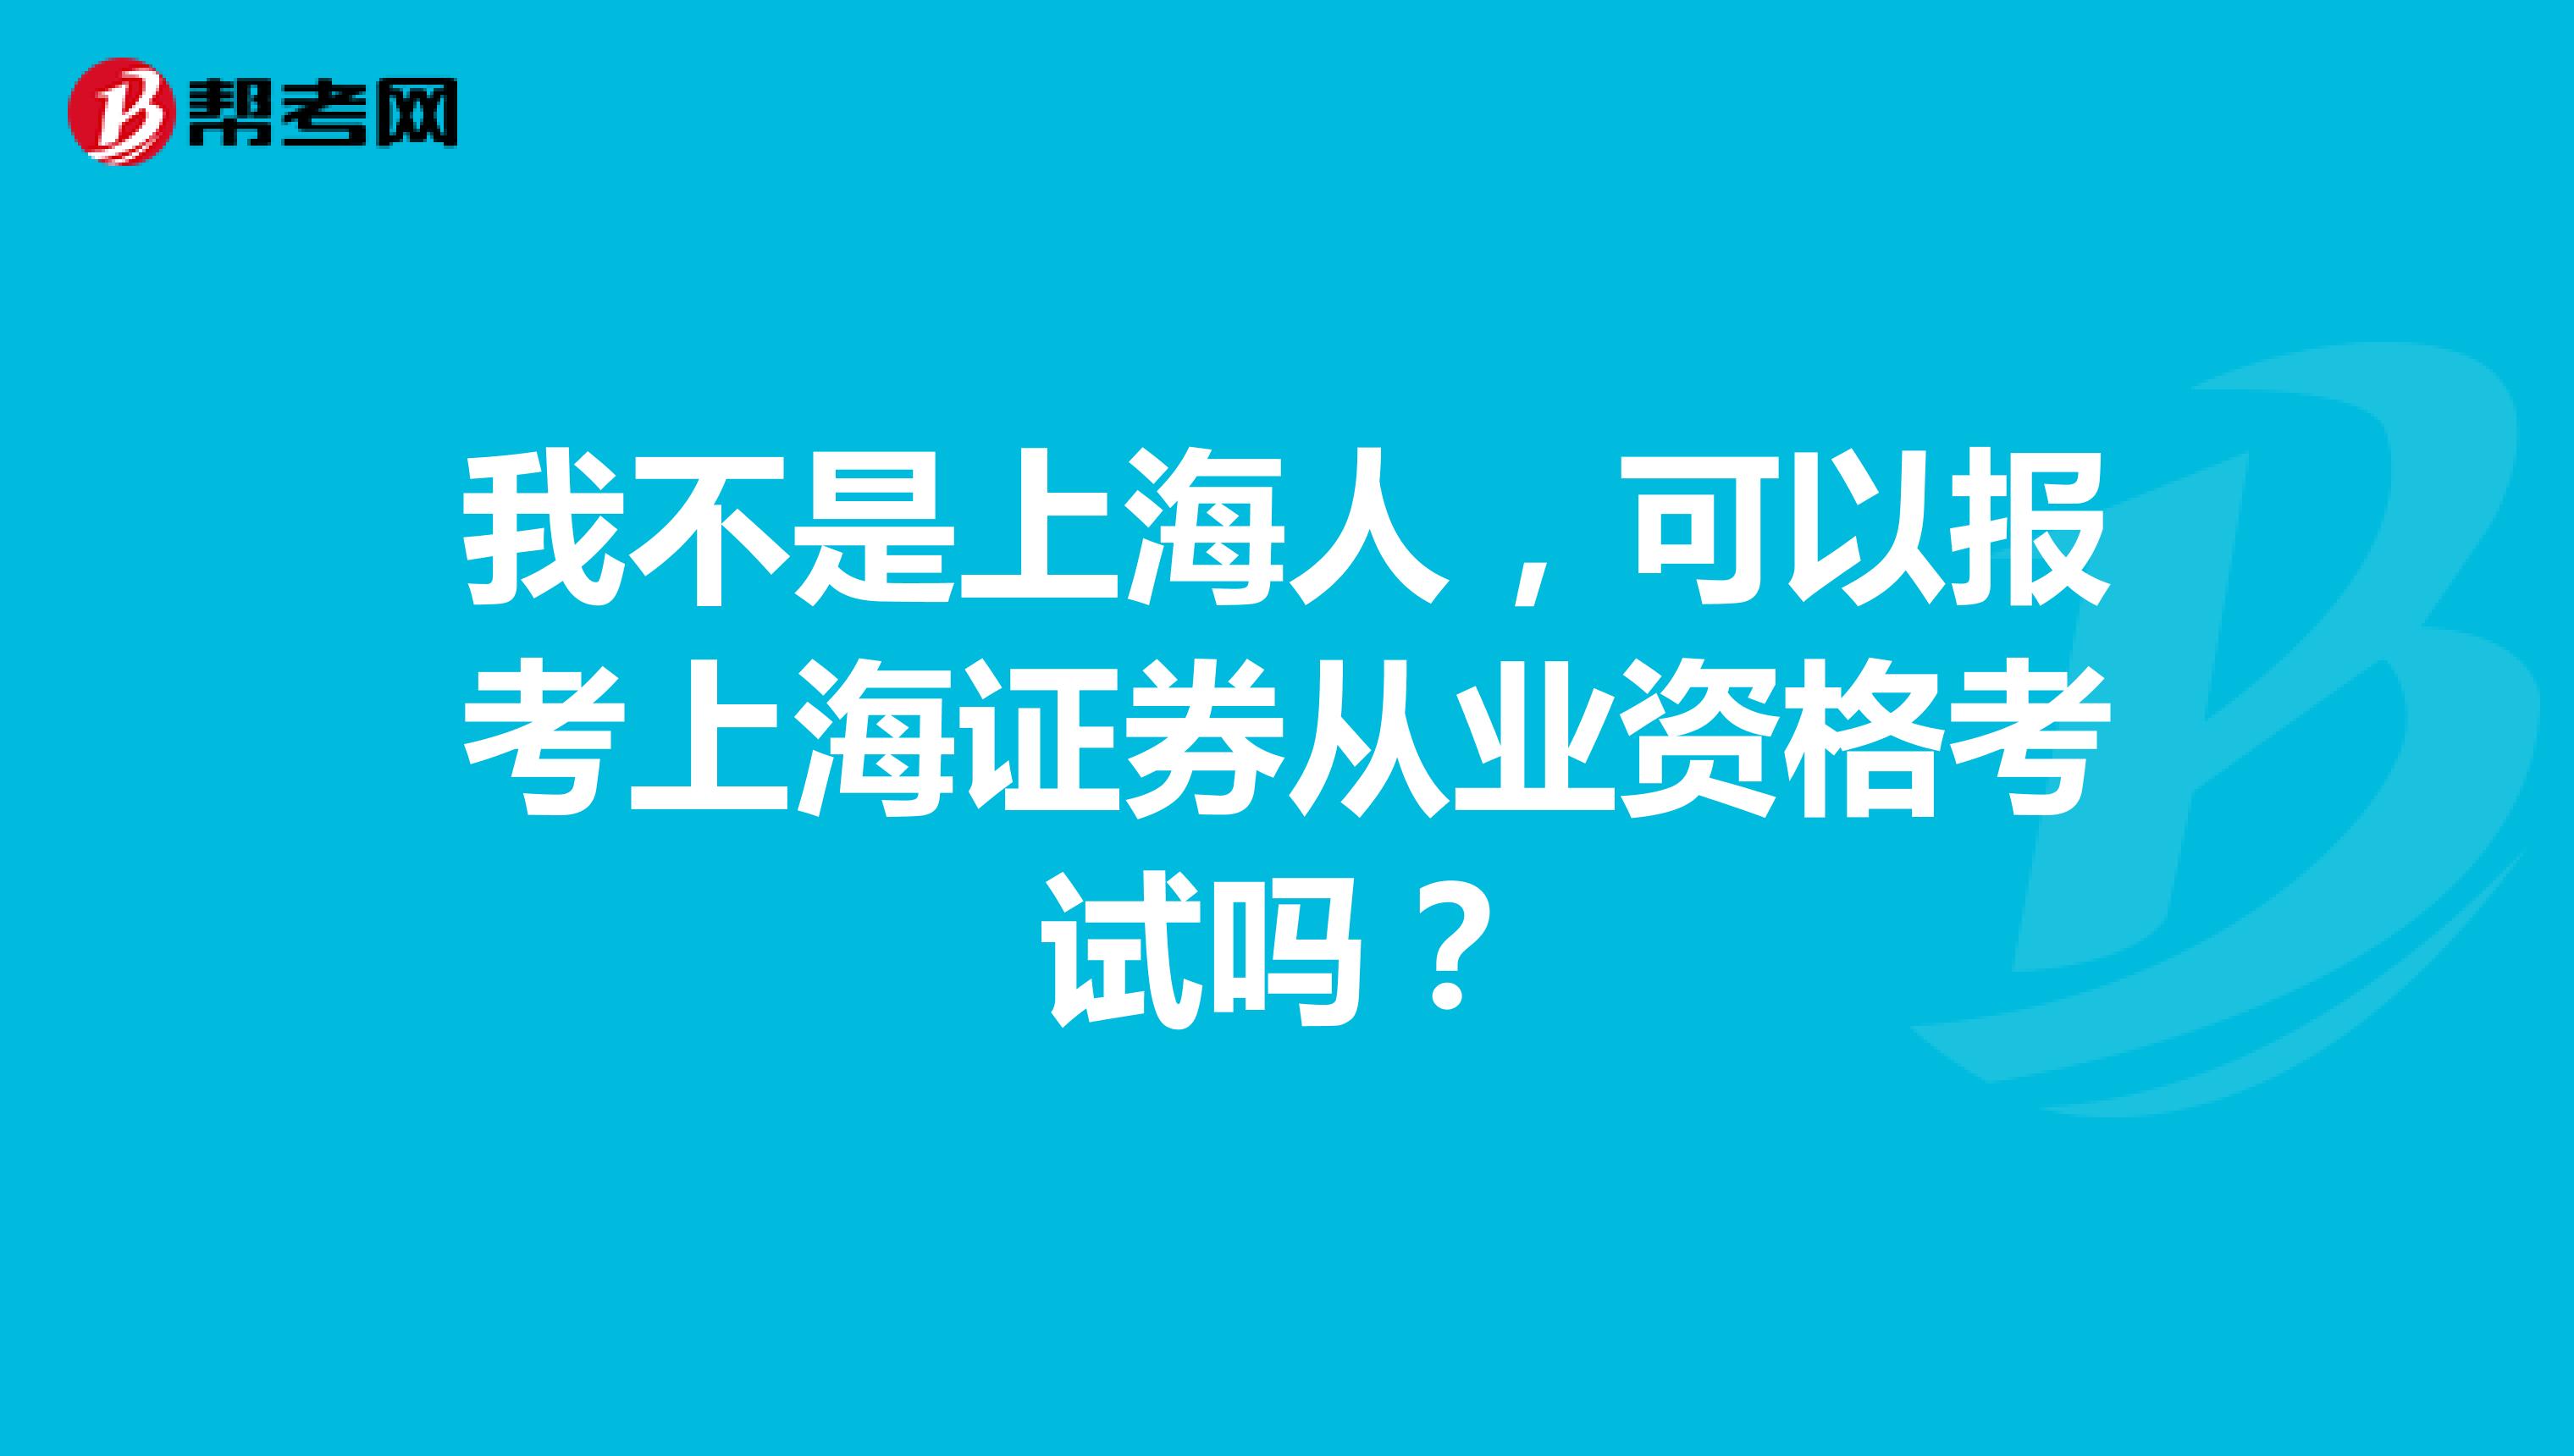 我不是上海人，可以报考上海证券从业资格考试吗？